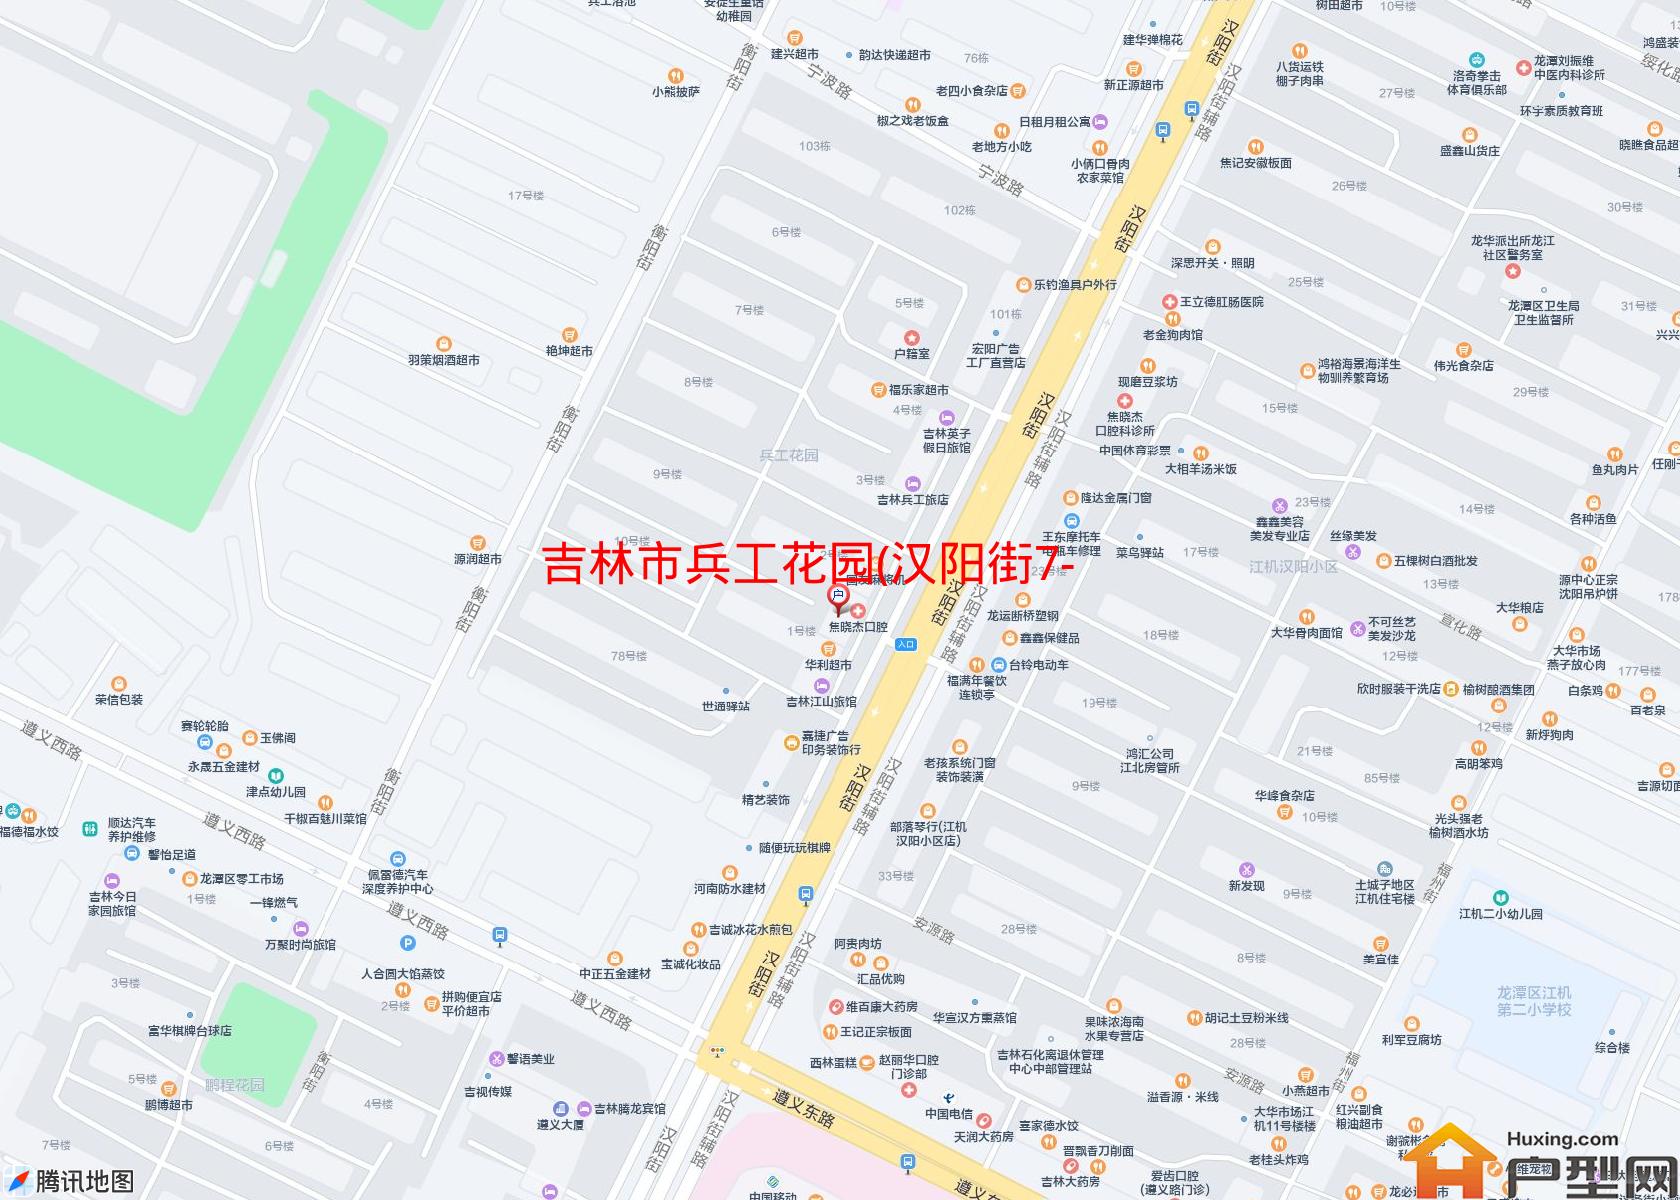 兵工花园(汉阳街7-11号)小区 - 户型网